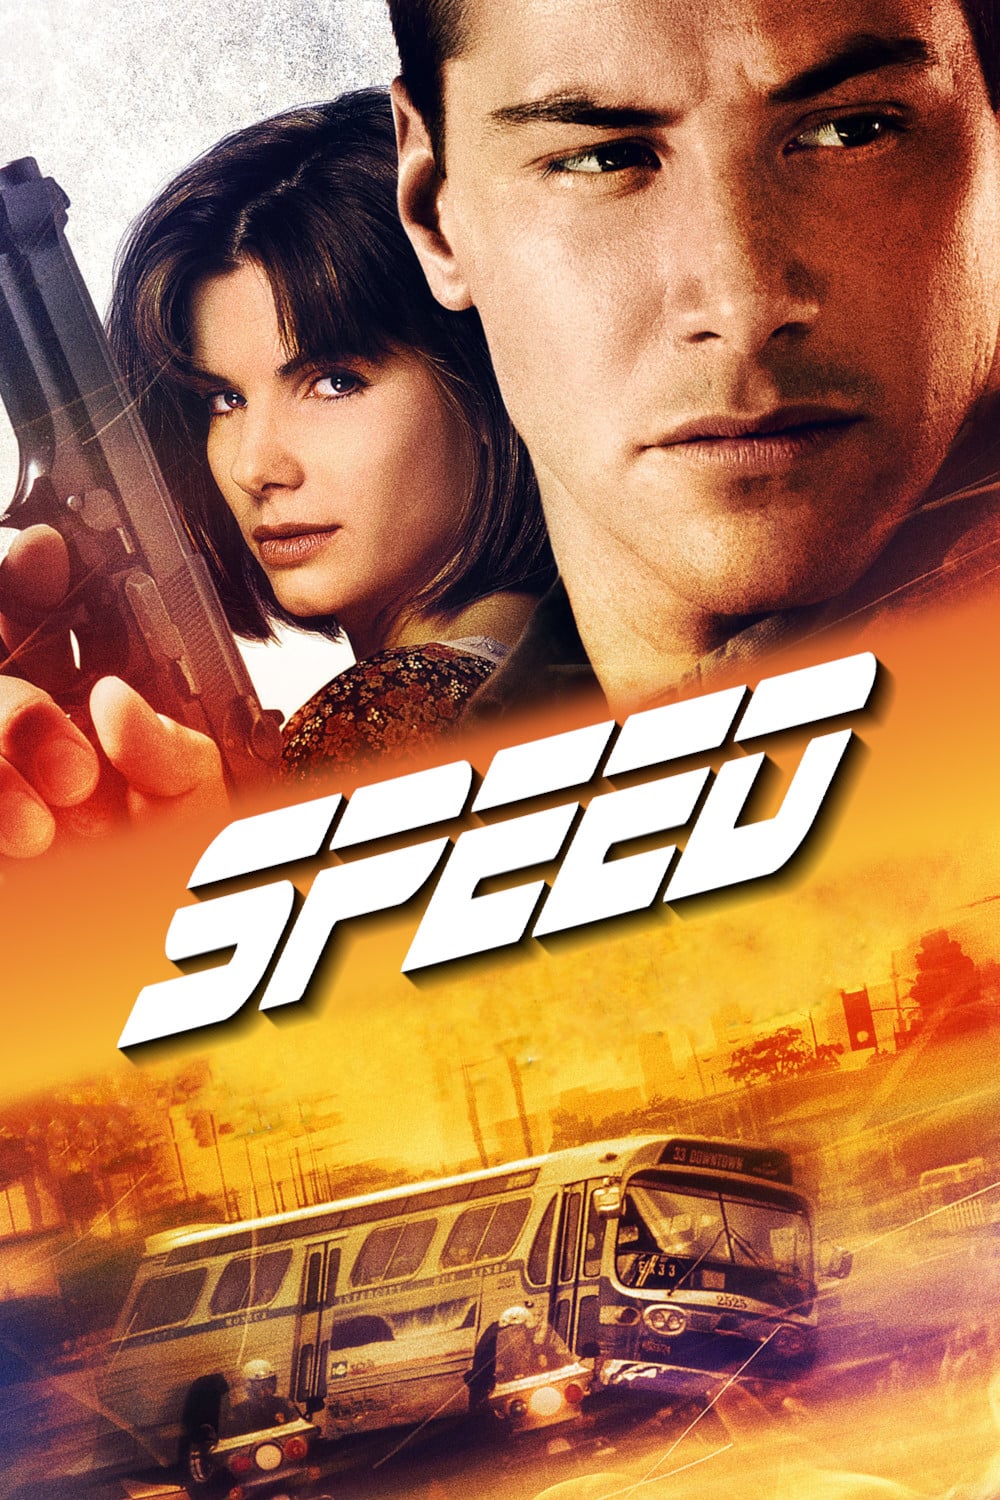 Plakat von "Speed"